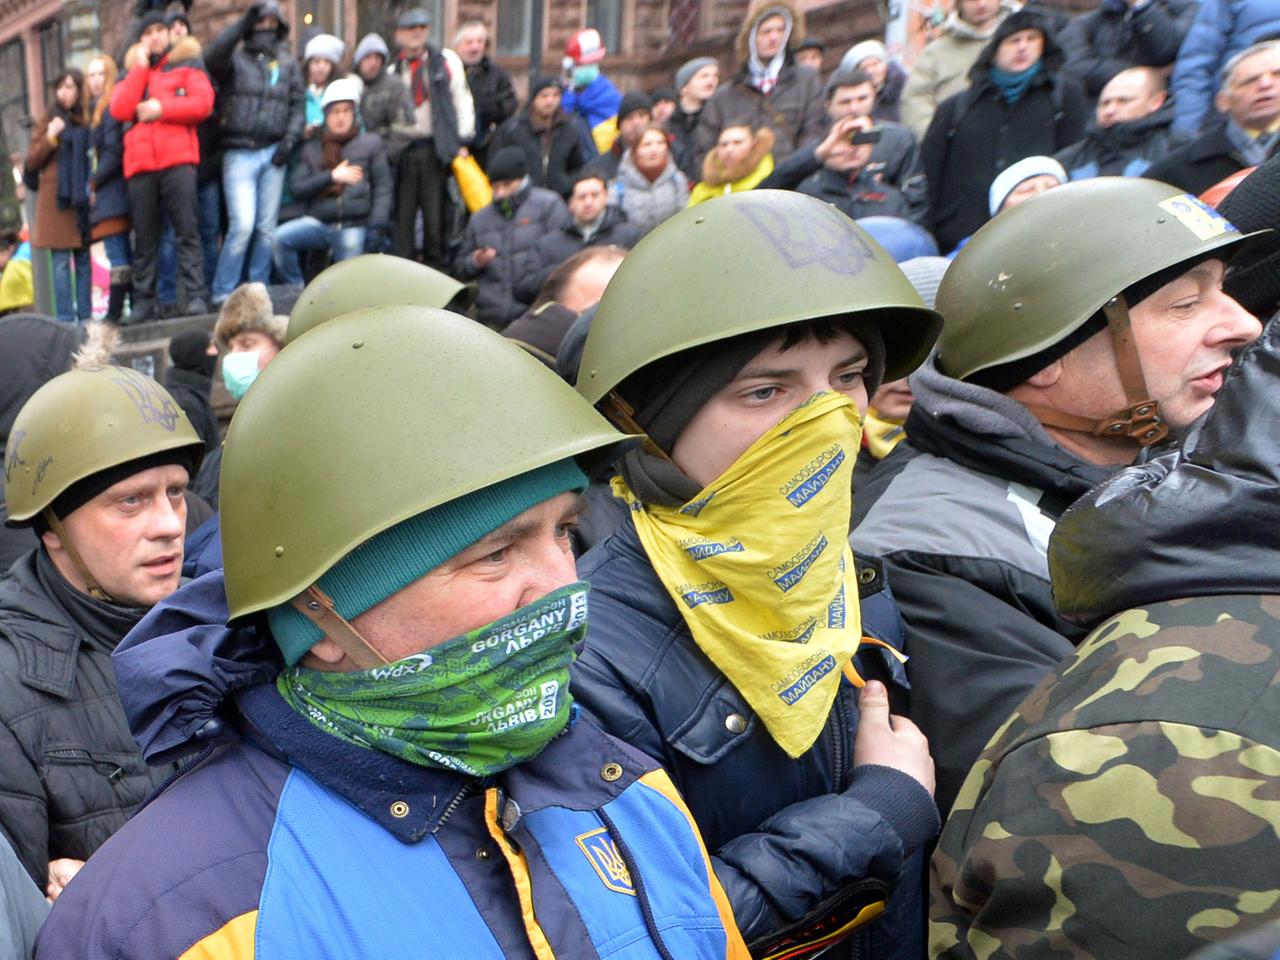 Demonstranten mit Mundschutz und Helmen auf dem Kopf.